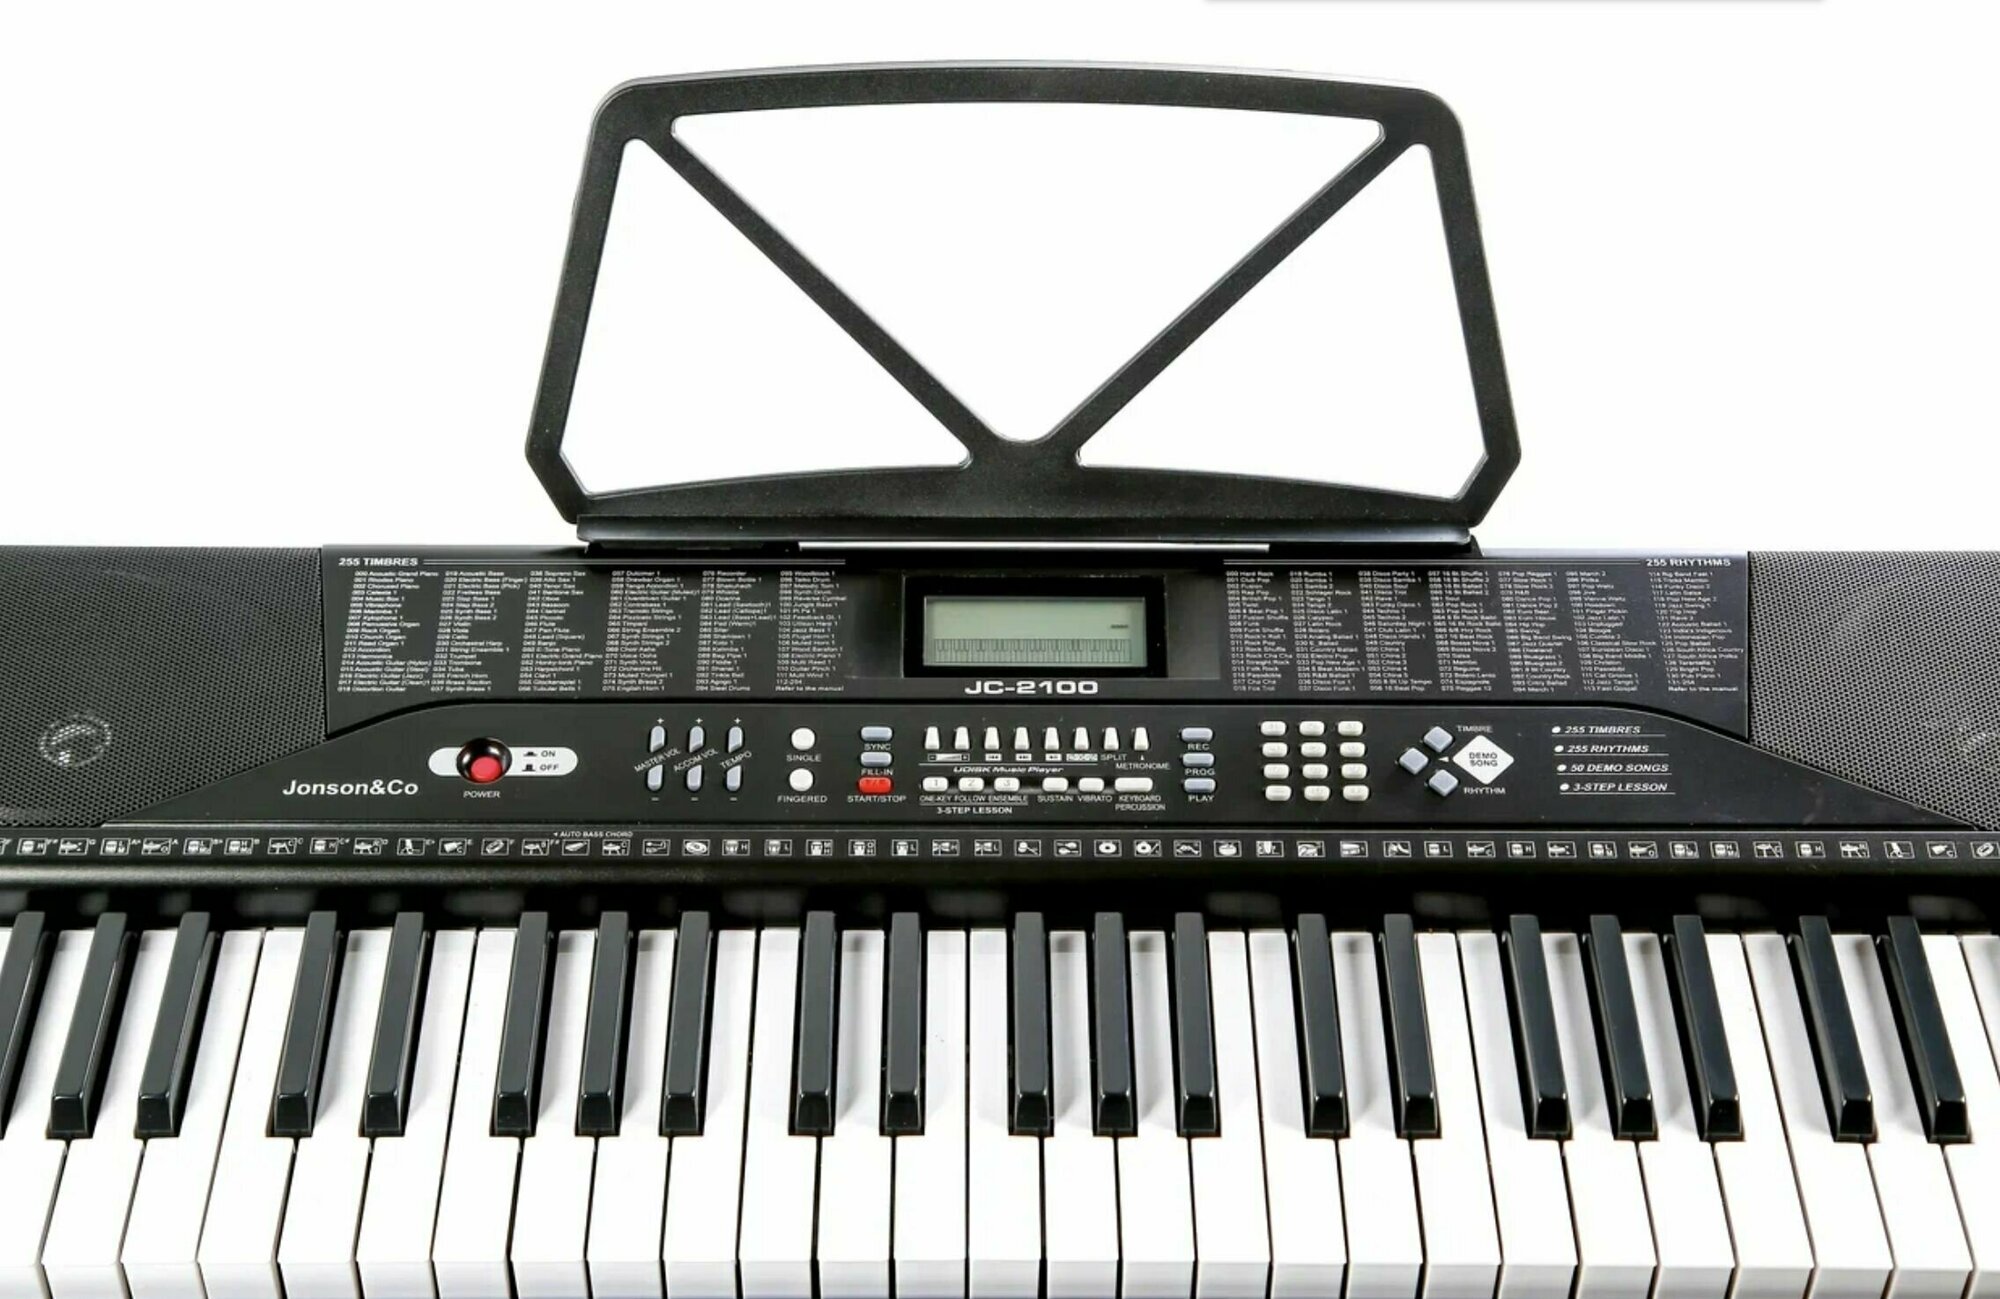 Синтезатор Jonson&Co JC-2100 (M) 61 клавиша